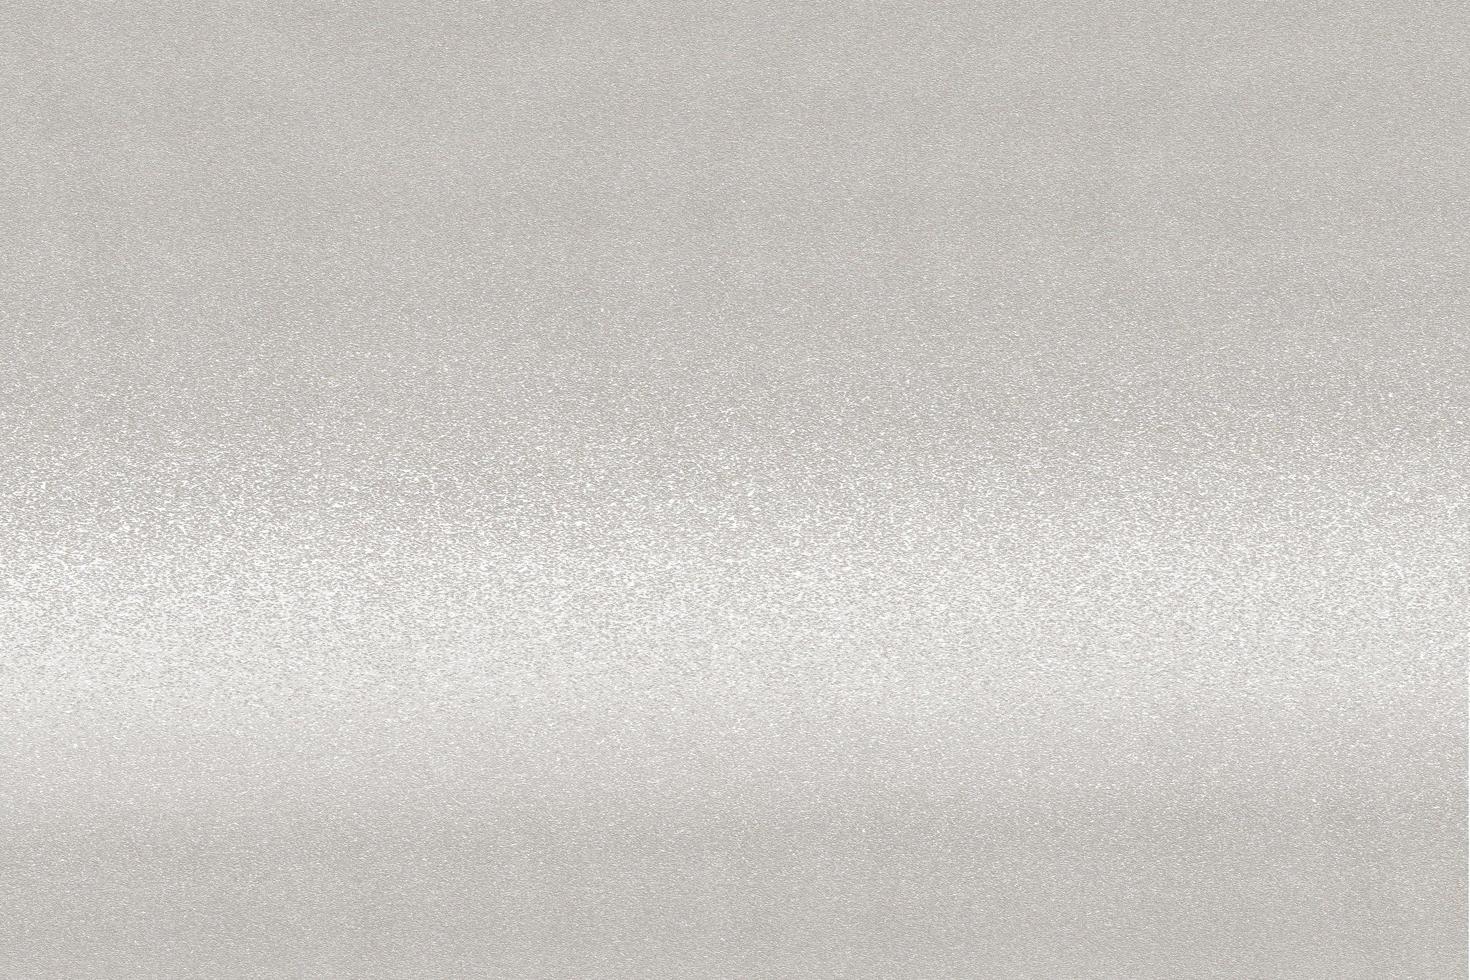 textura de manchas en acero inoxidable blanco, fondo abstracto foto